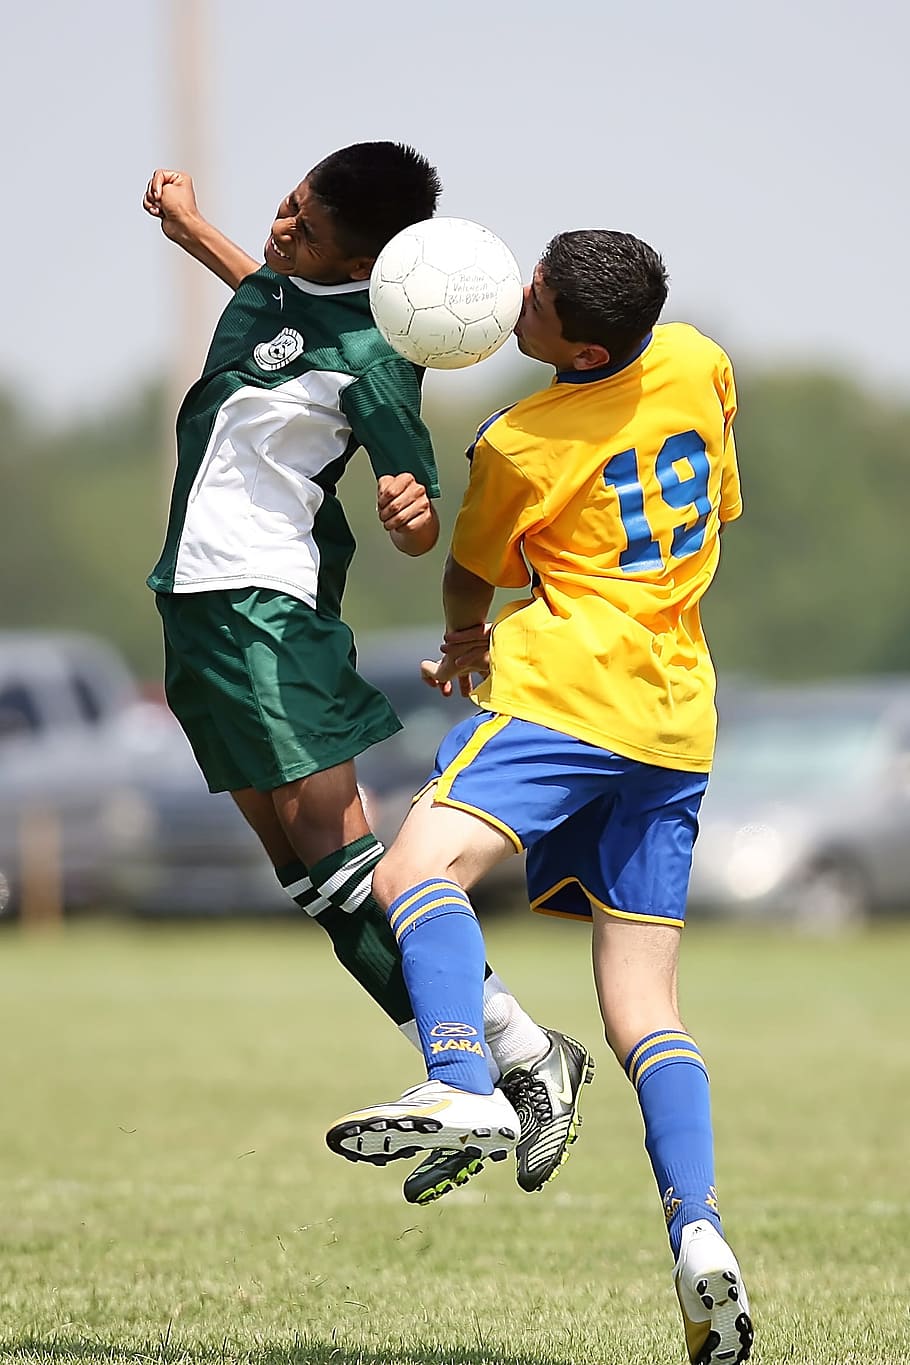 2つ, サッカー選手, 見出し, フィールド, サッカー, 対立, 競争, プレーヤー, 少年, アクション